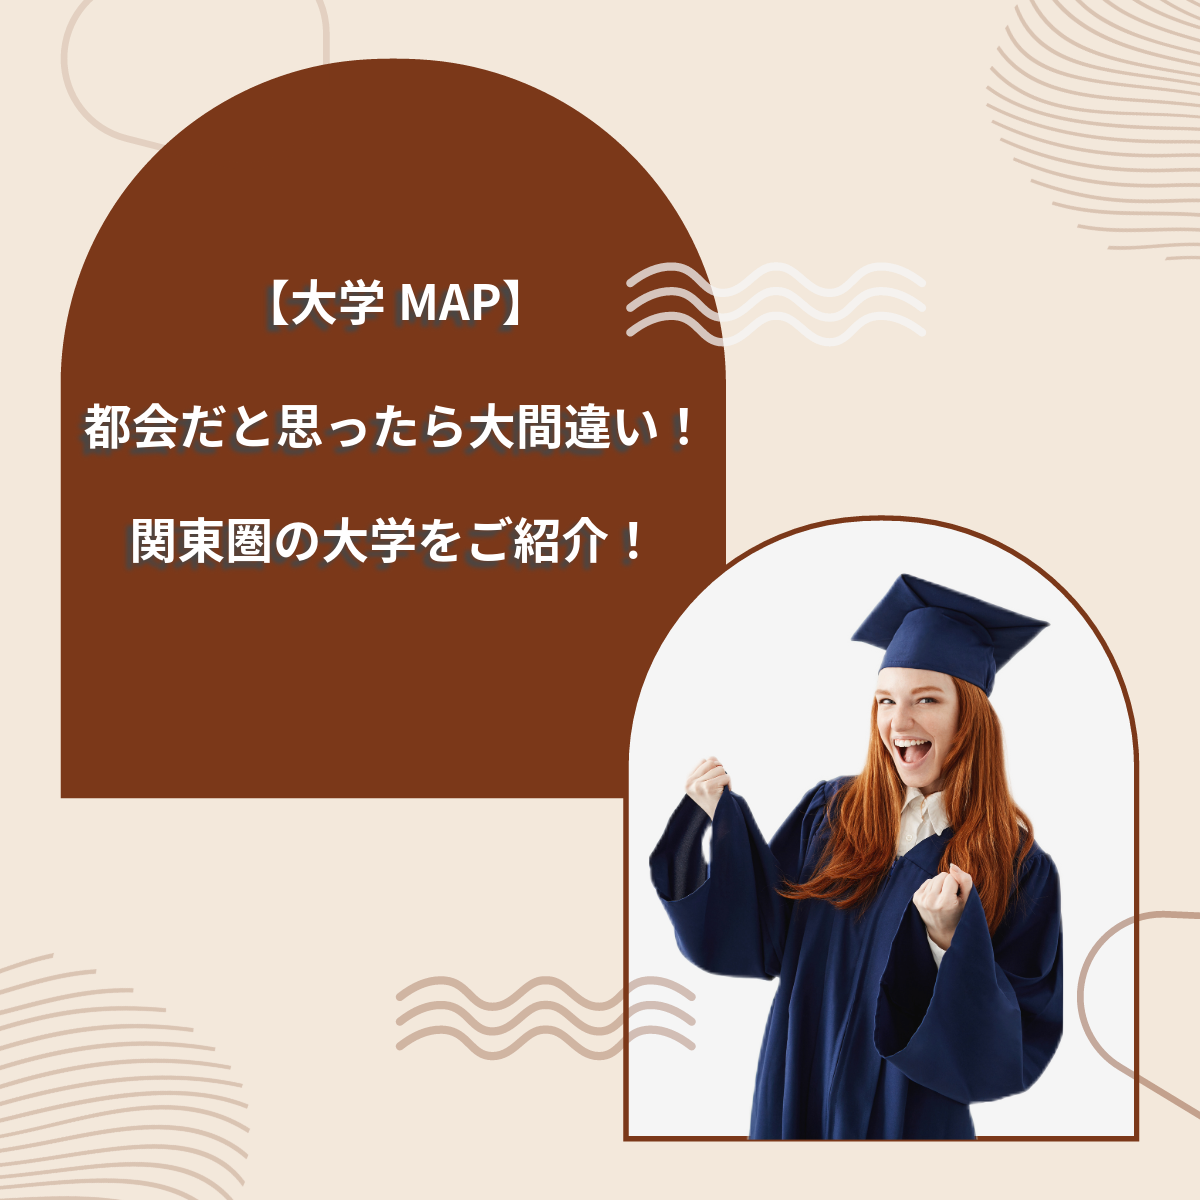 【大学MAP】都会だと思ったら大間違い！関東の大学を紹介！